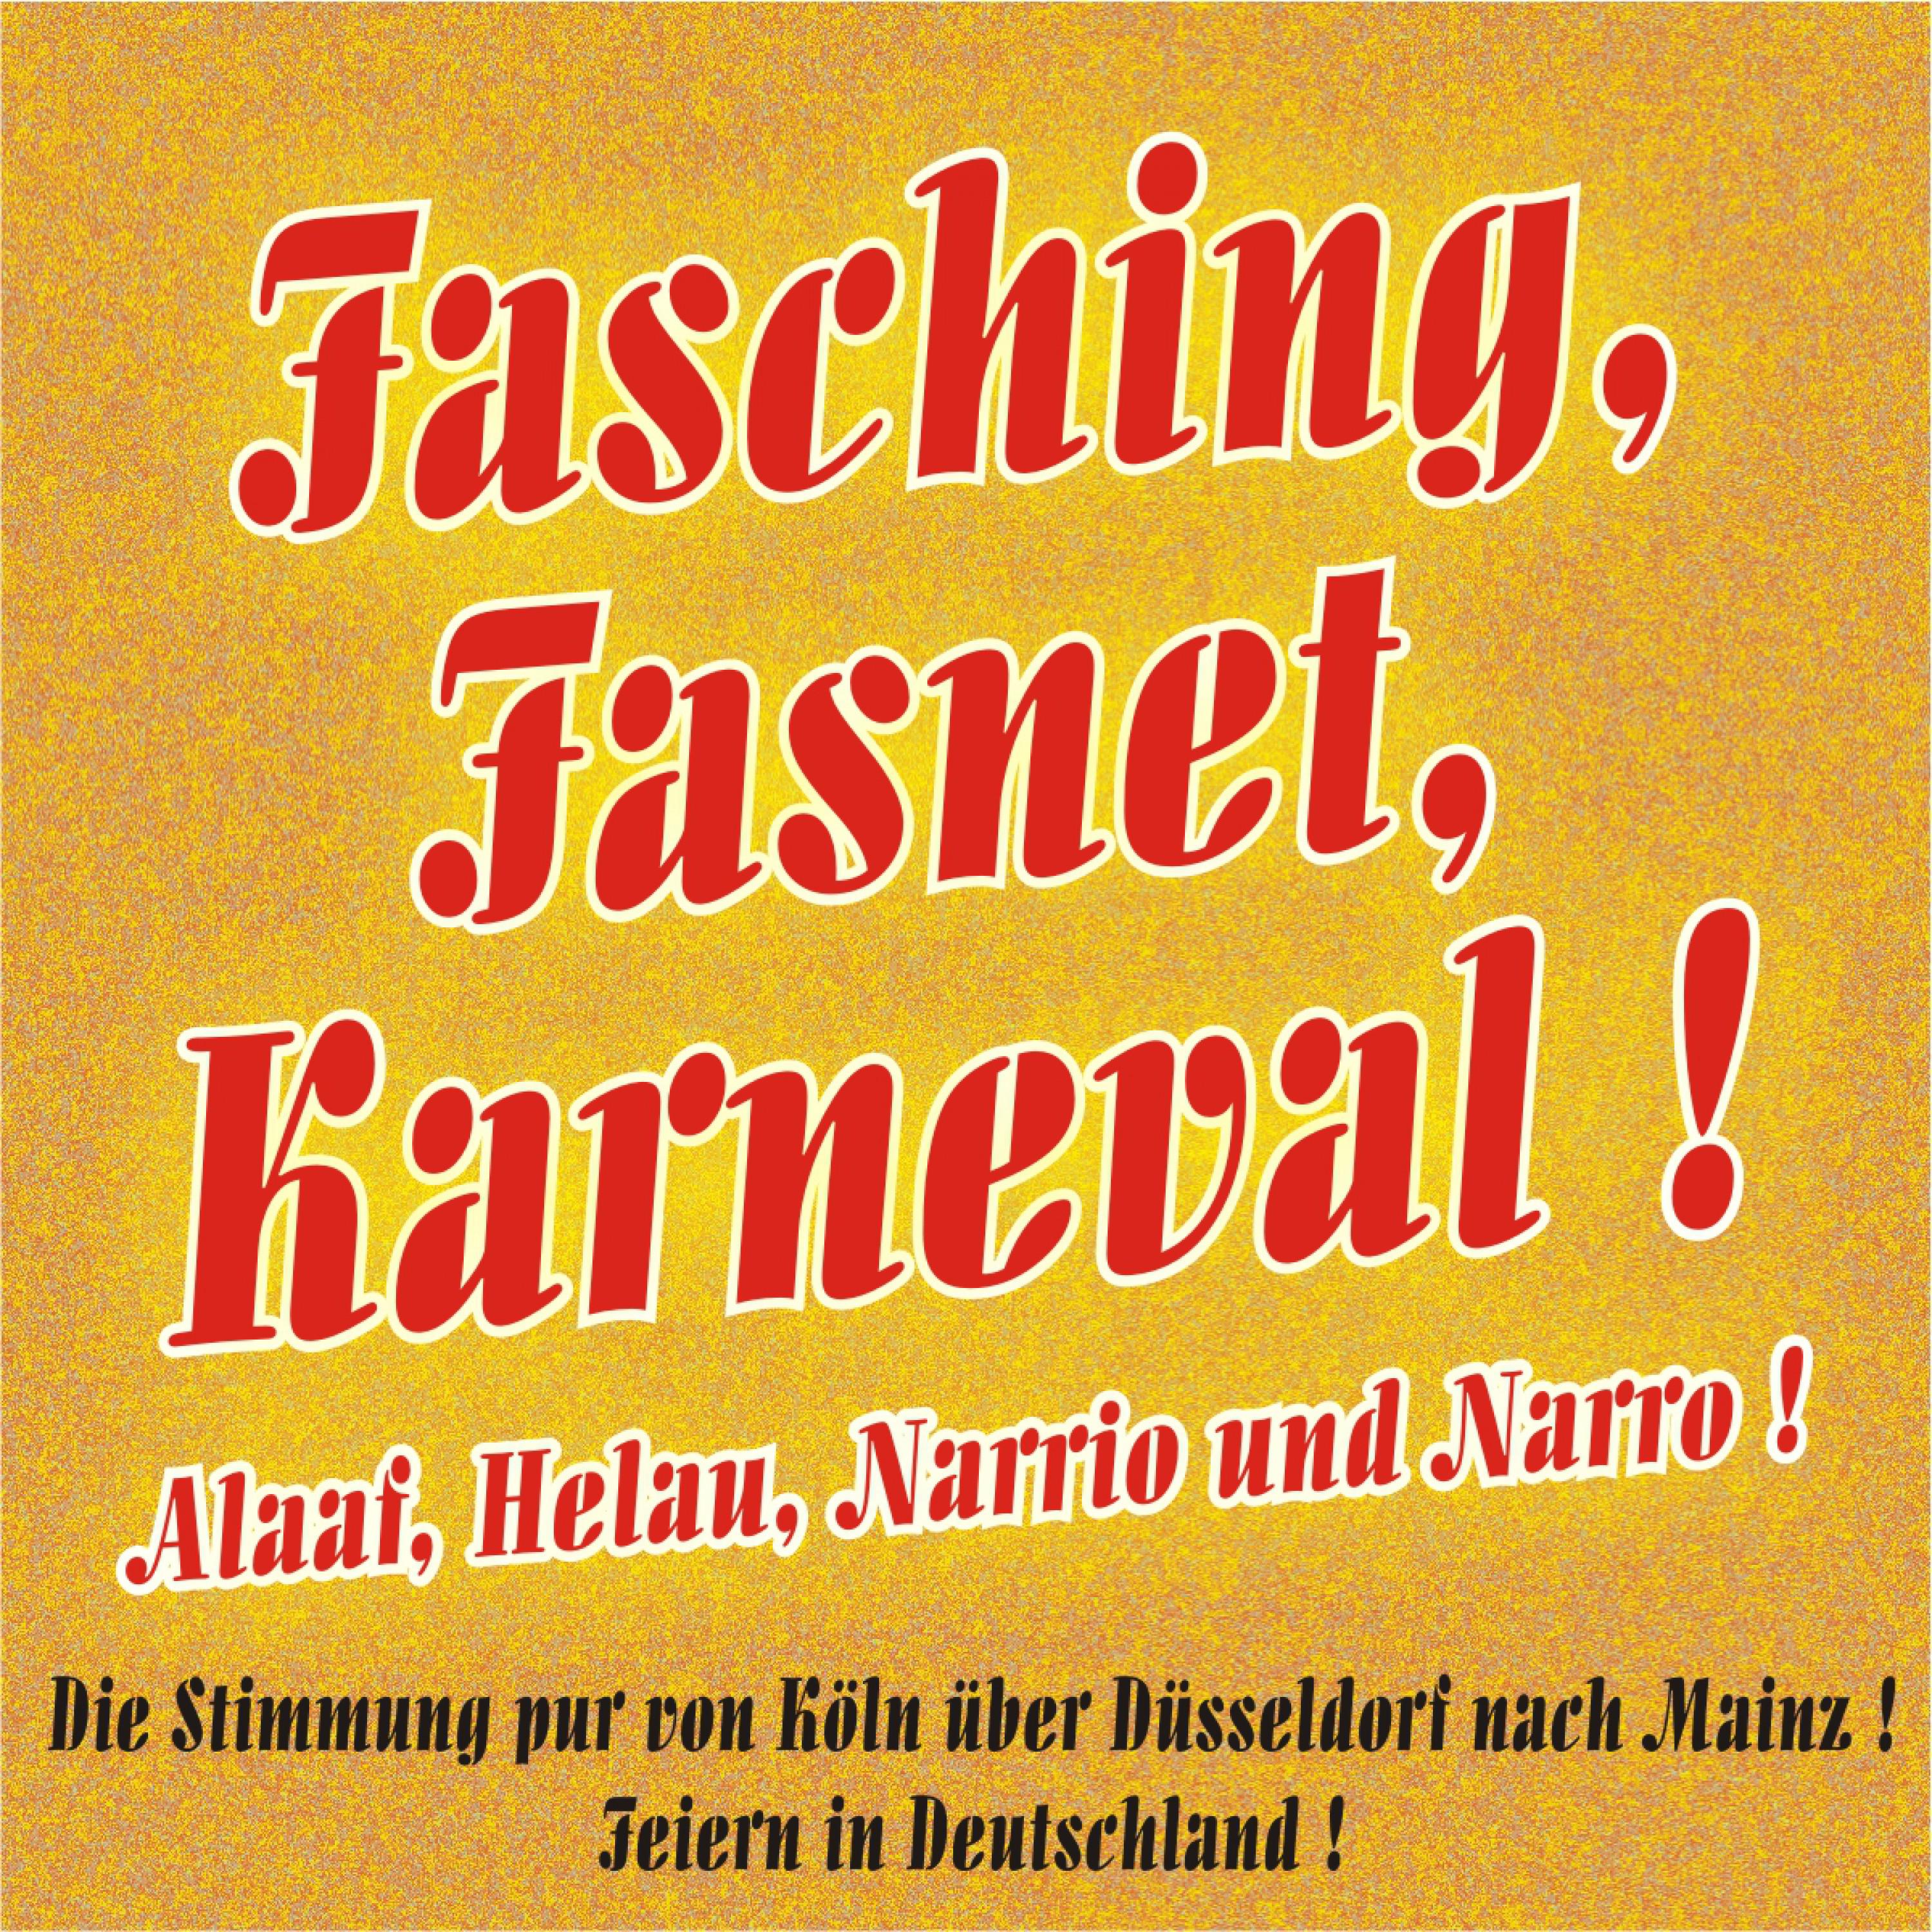 Fasching, Fasnet, Karneval ! Alaaf, Helau, Narrio und Narro  Die Stimmung pur von K ln ü ber Dü sseldorf nach Mainz  Feiern in Deutschland !